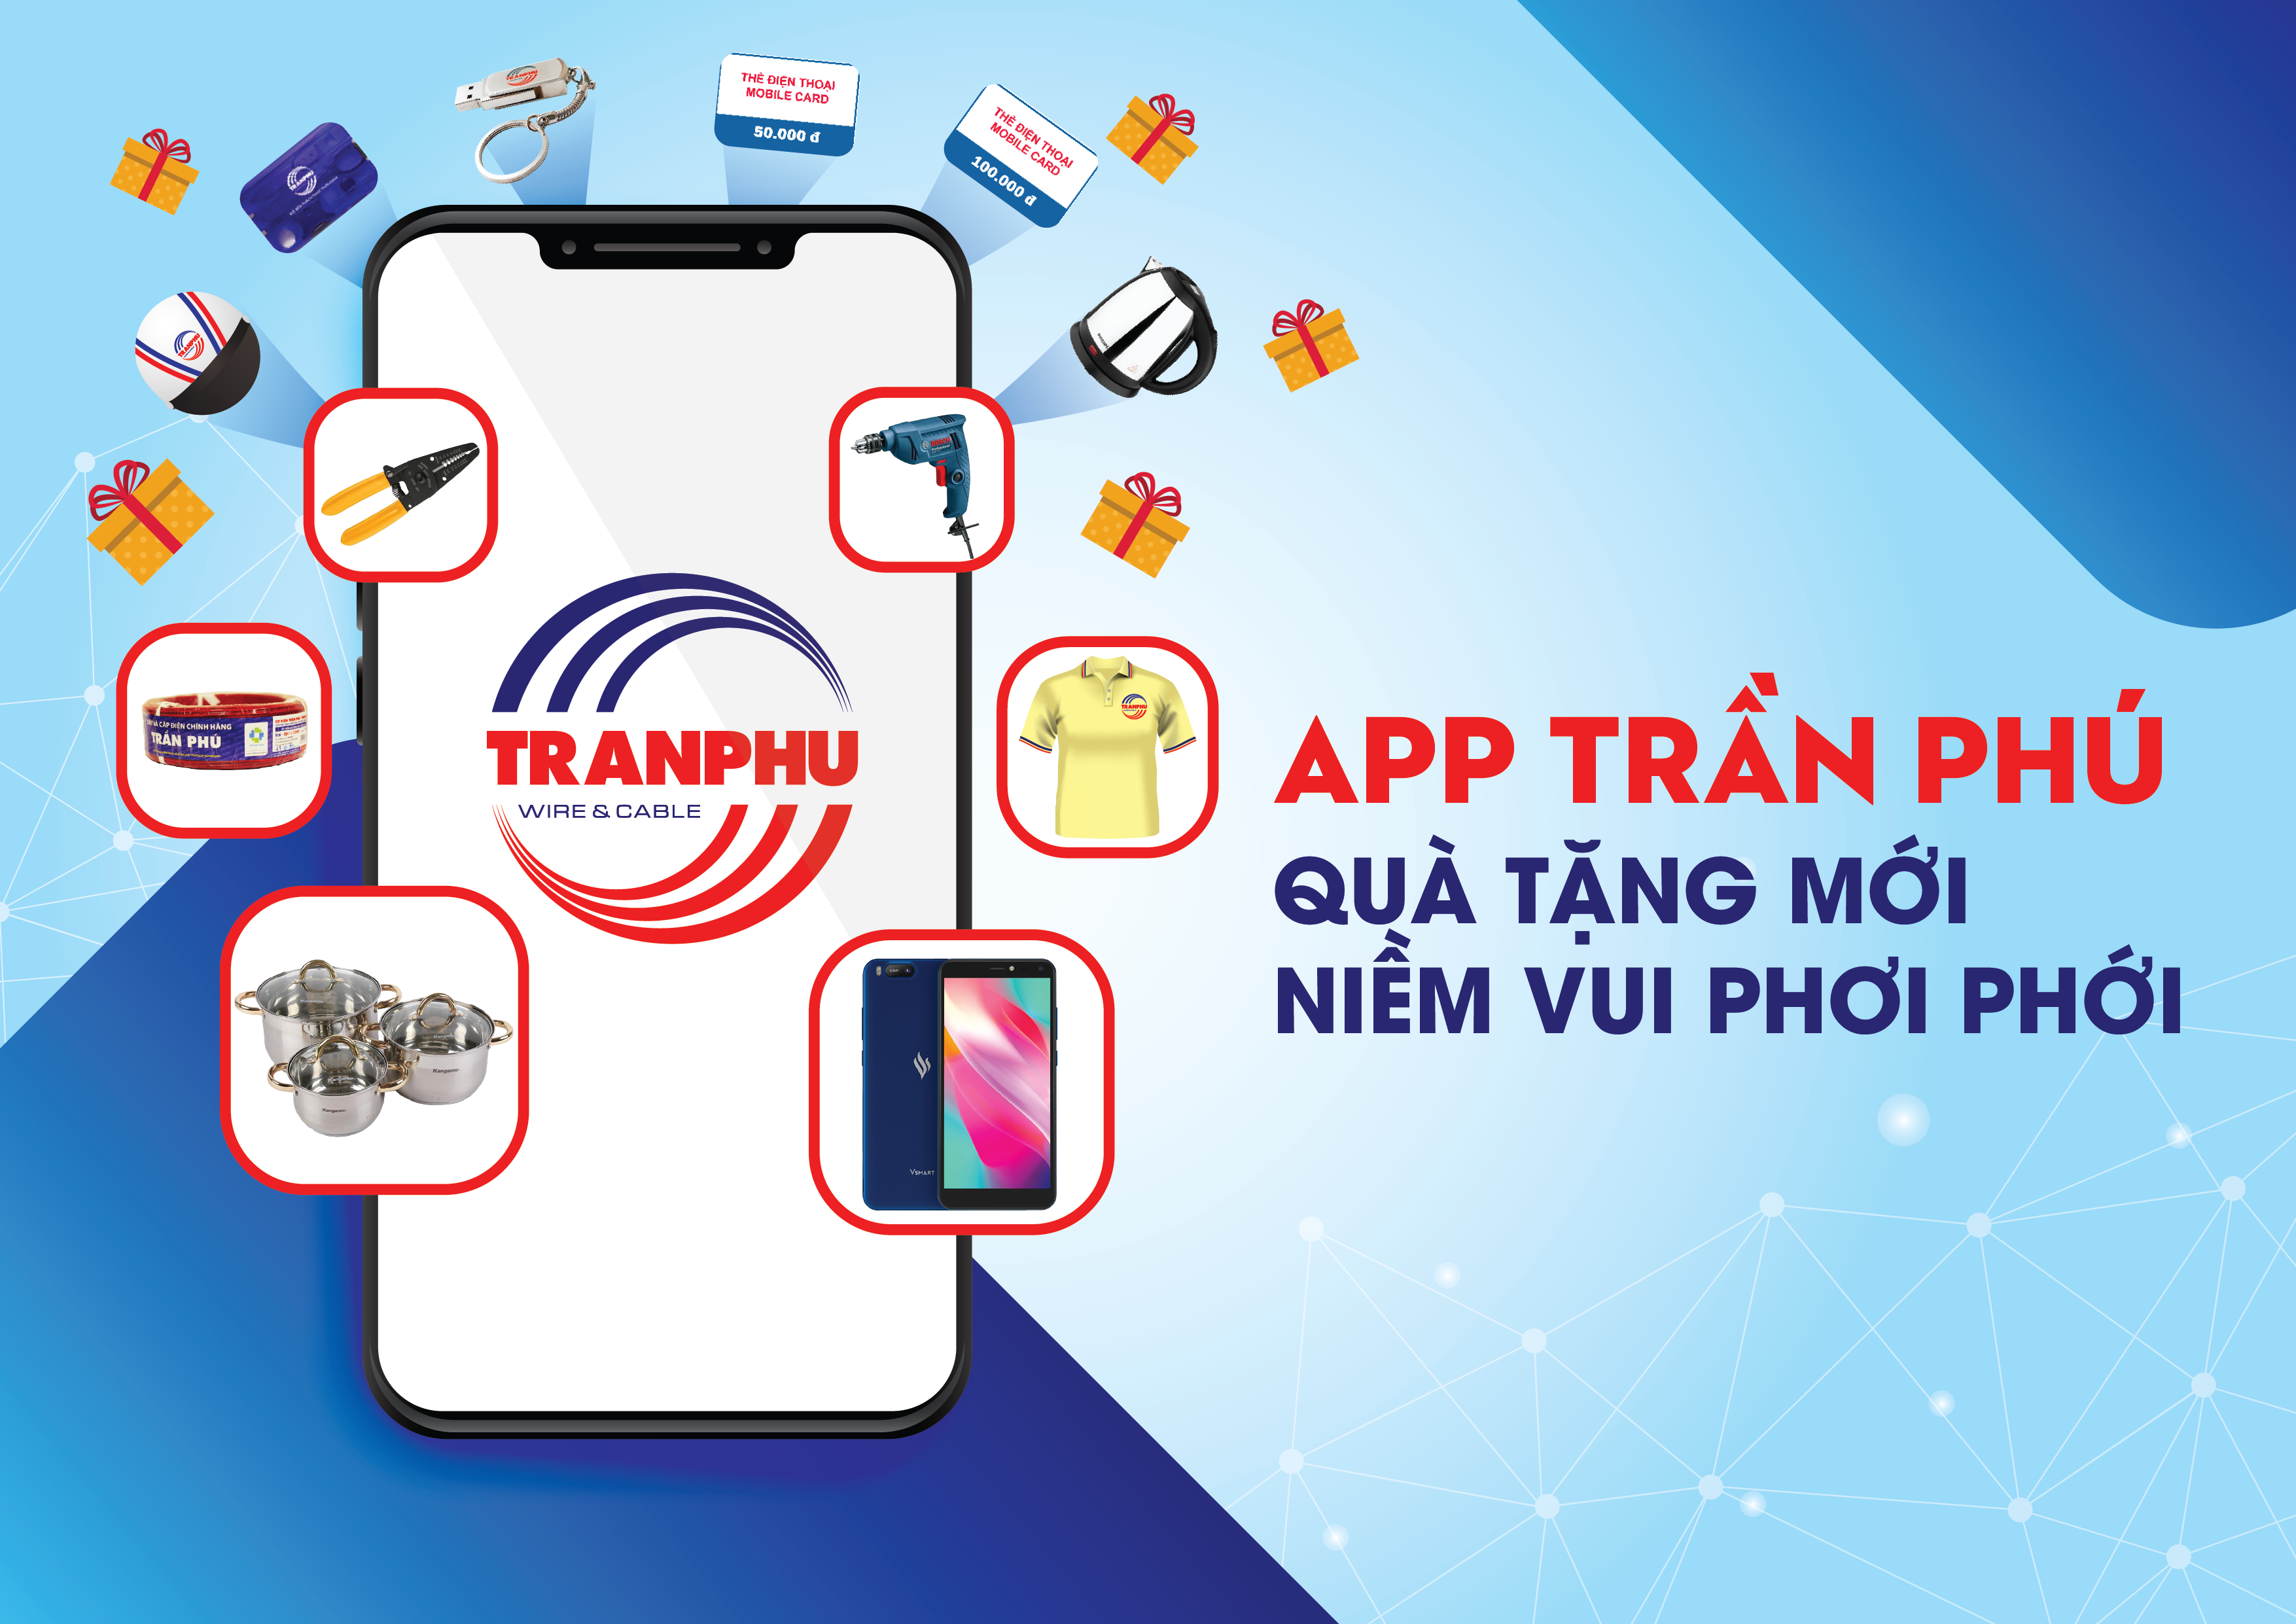 App Trần Phú: Quà tặng mới, niềm vui phơi phới